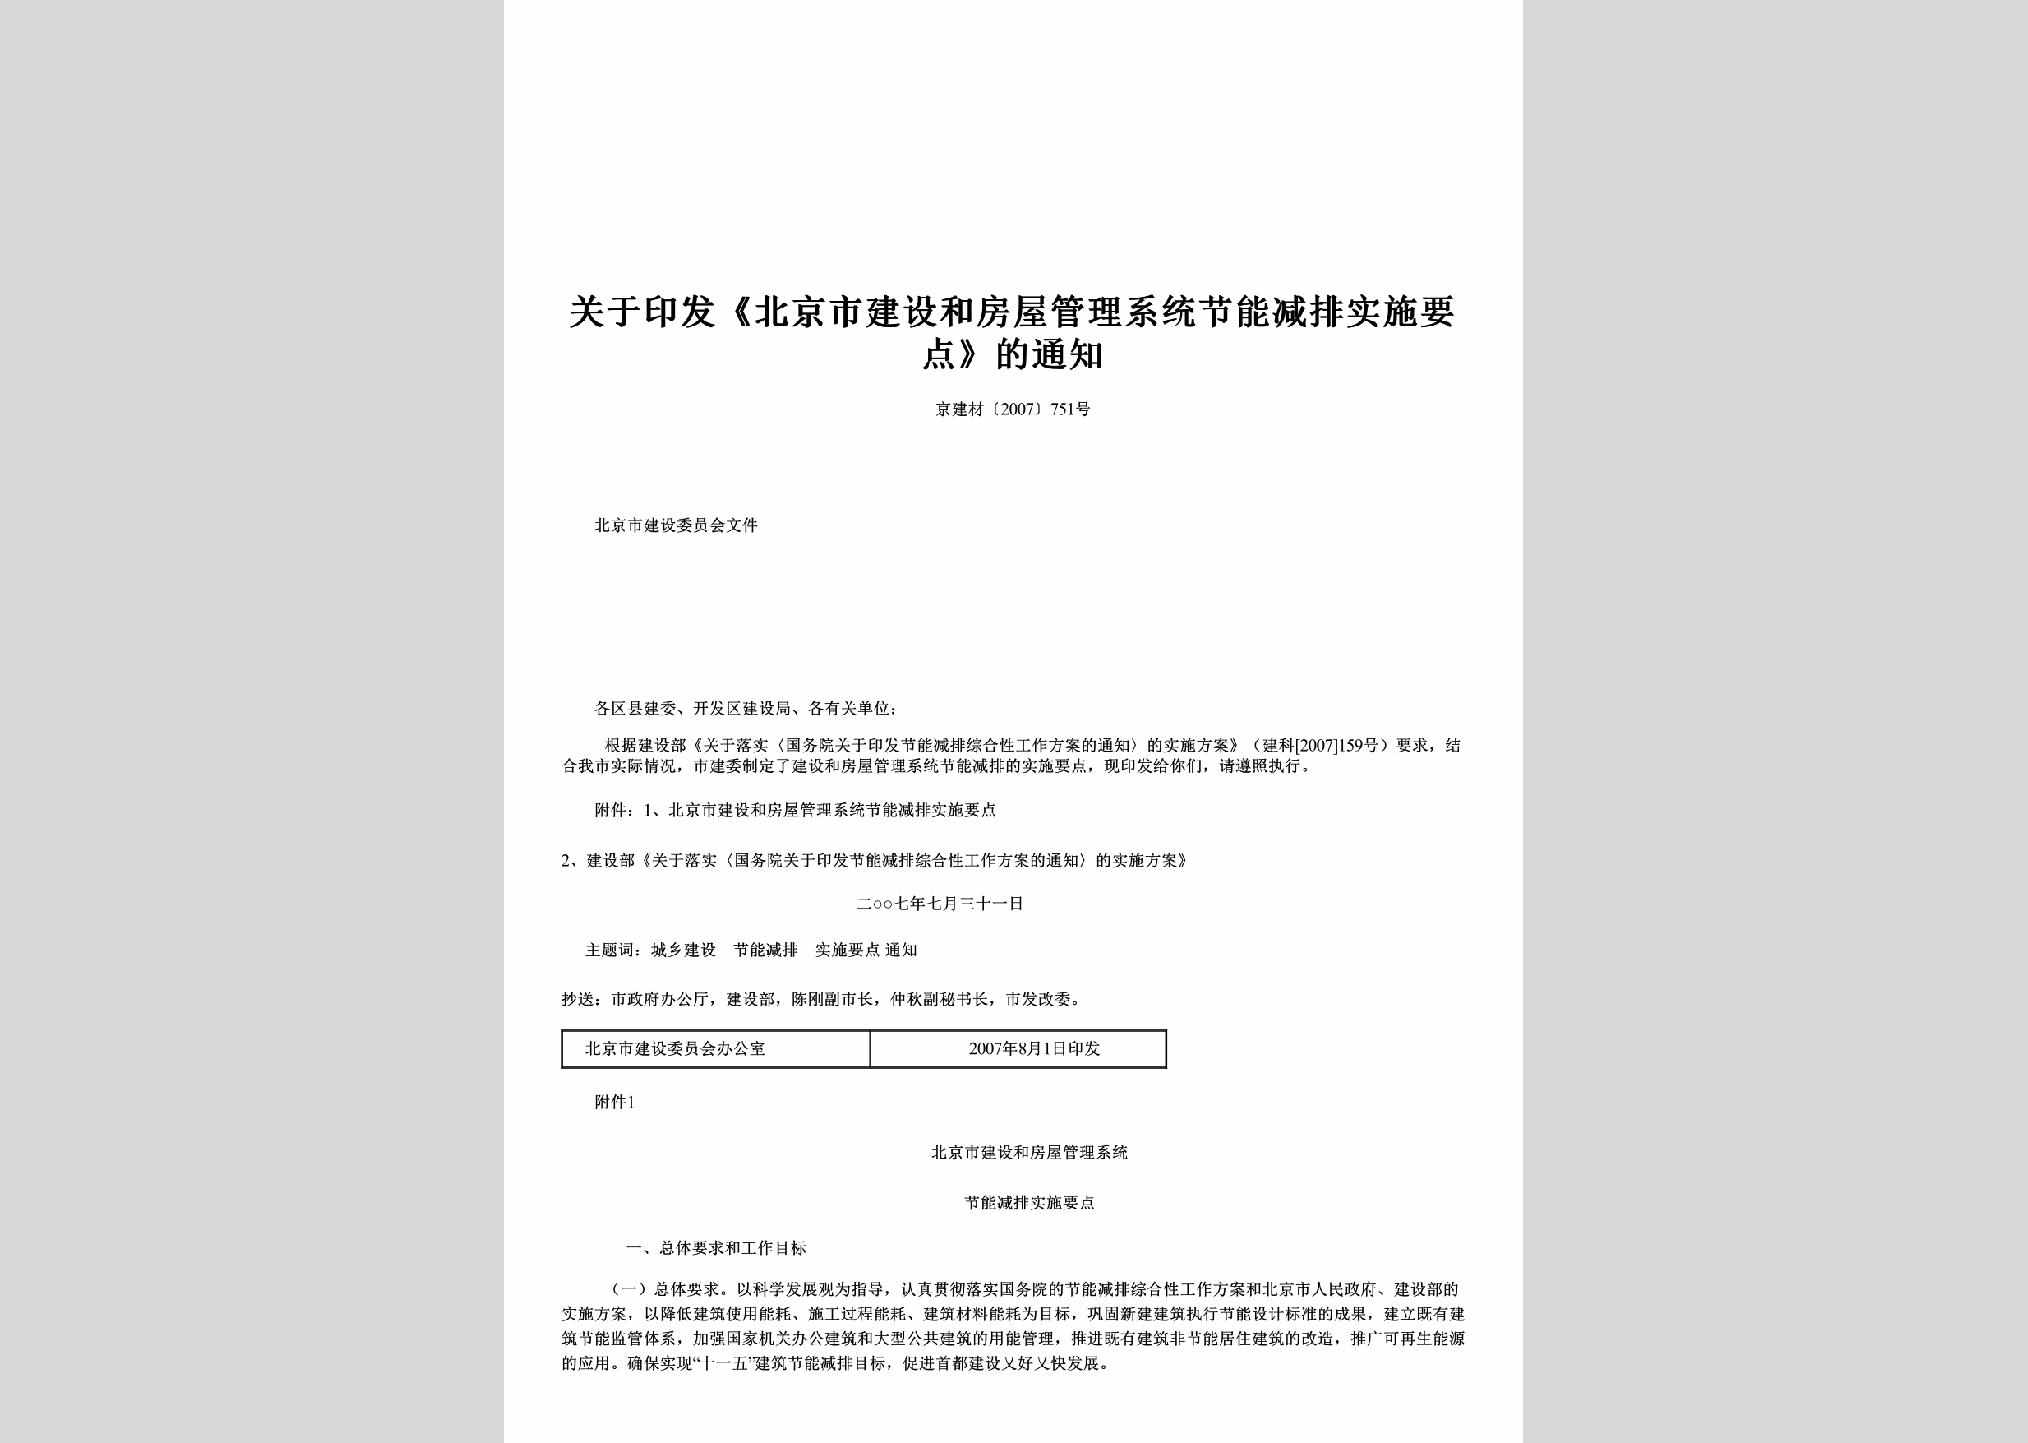 京建材[2007]751号：关于印发《北京市建设和房屋管理系统节能减排实施要点》的通知